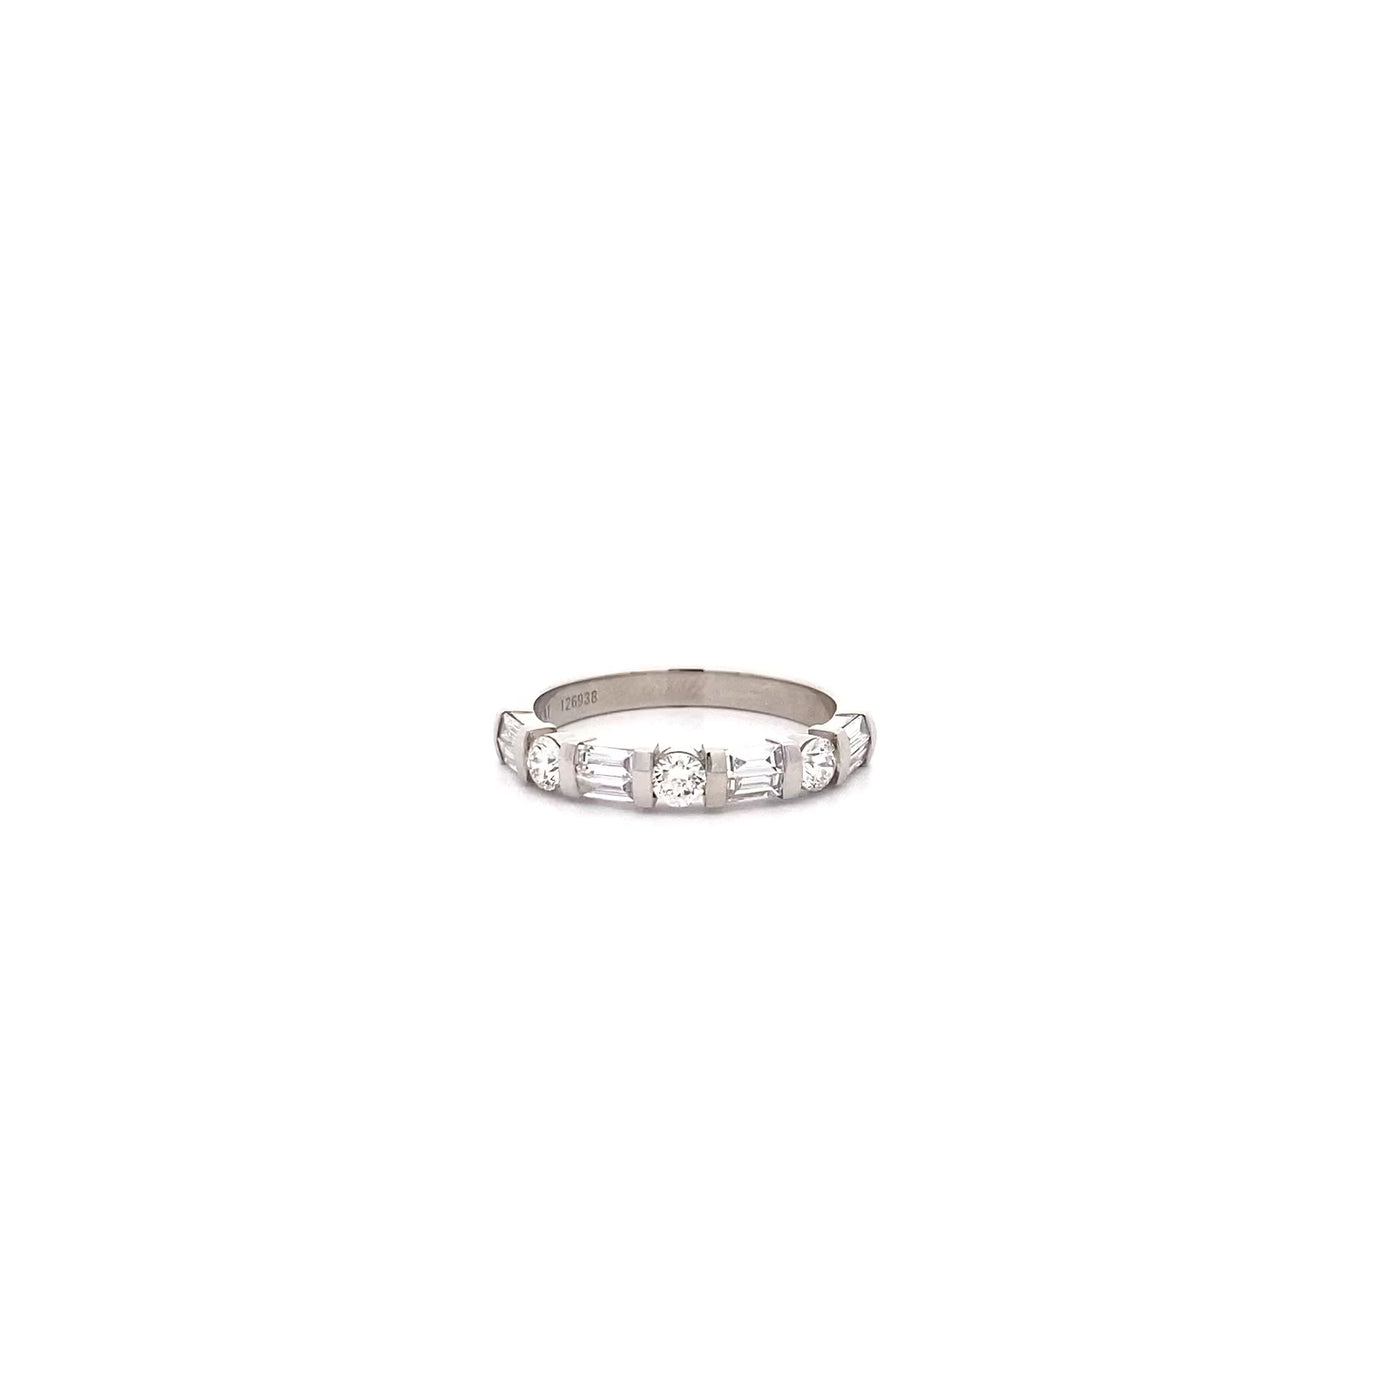 Brilliant & Baguette Cut Diamond Ring in Platinum | 0.68ctw